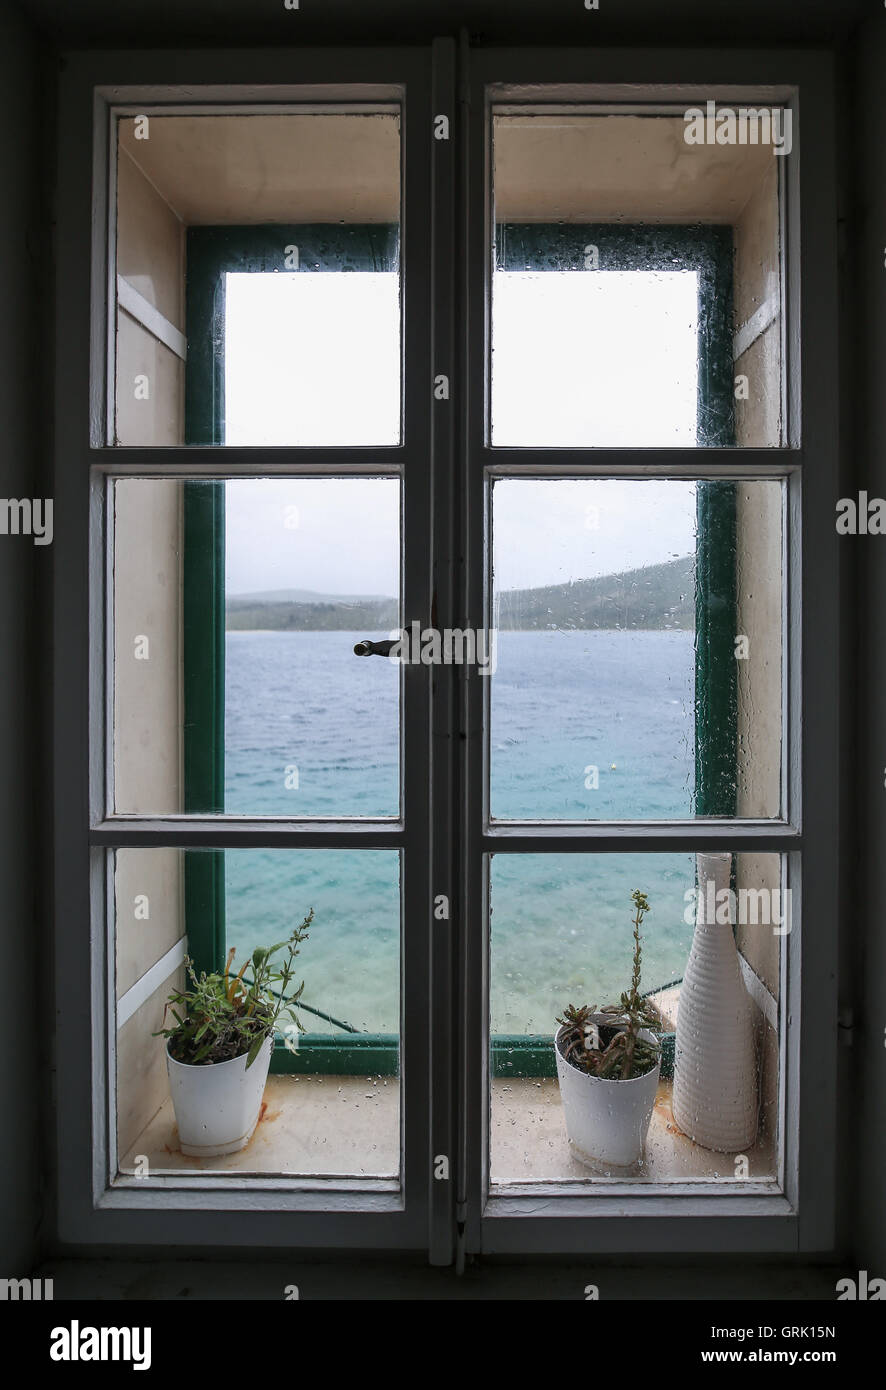 Splendide immagini di finestra con incredibile vista sul mare Foto Stock